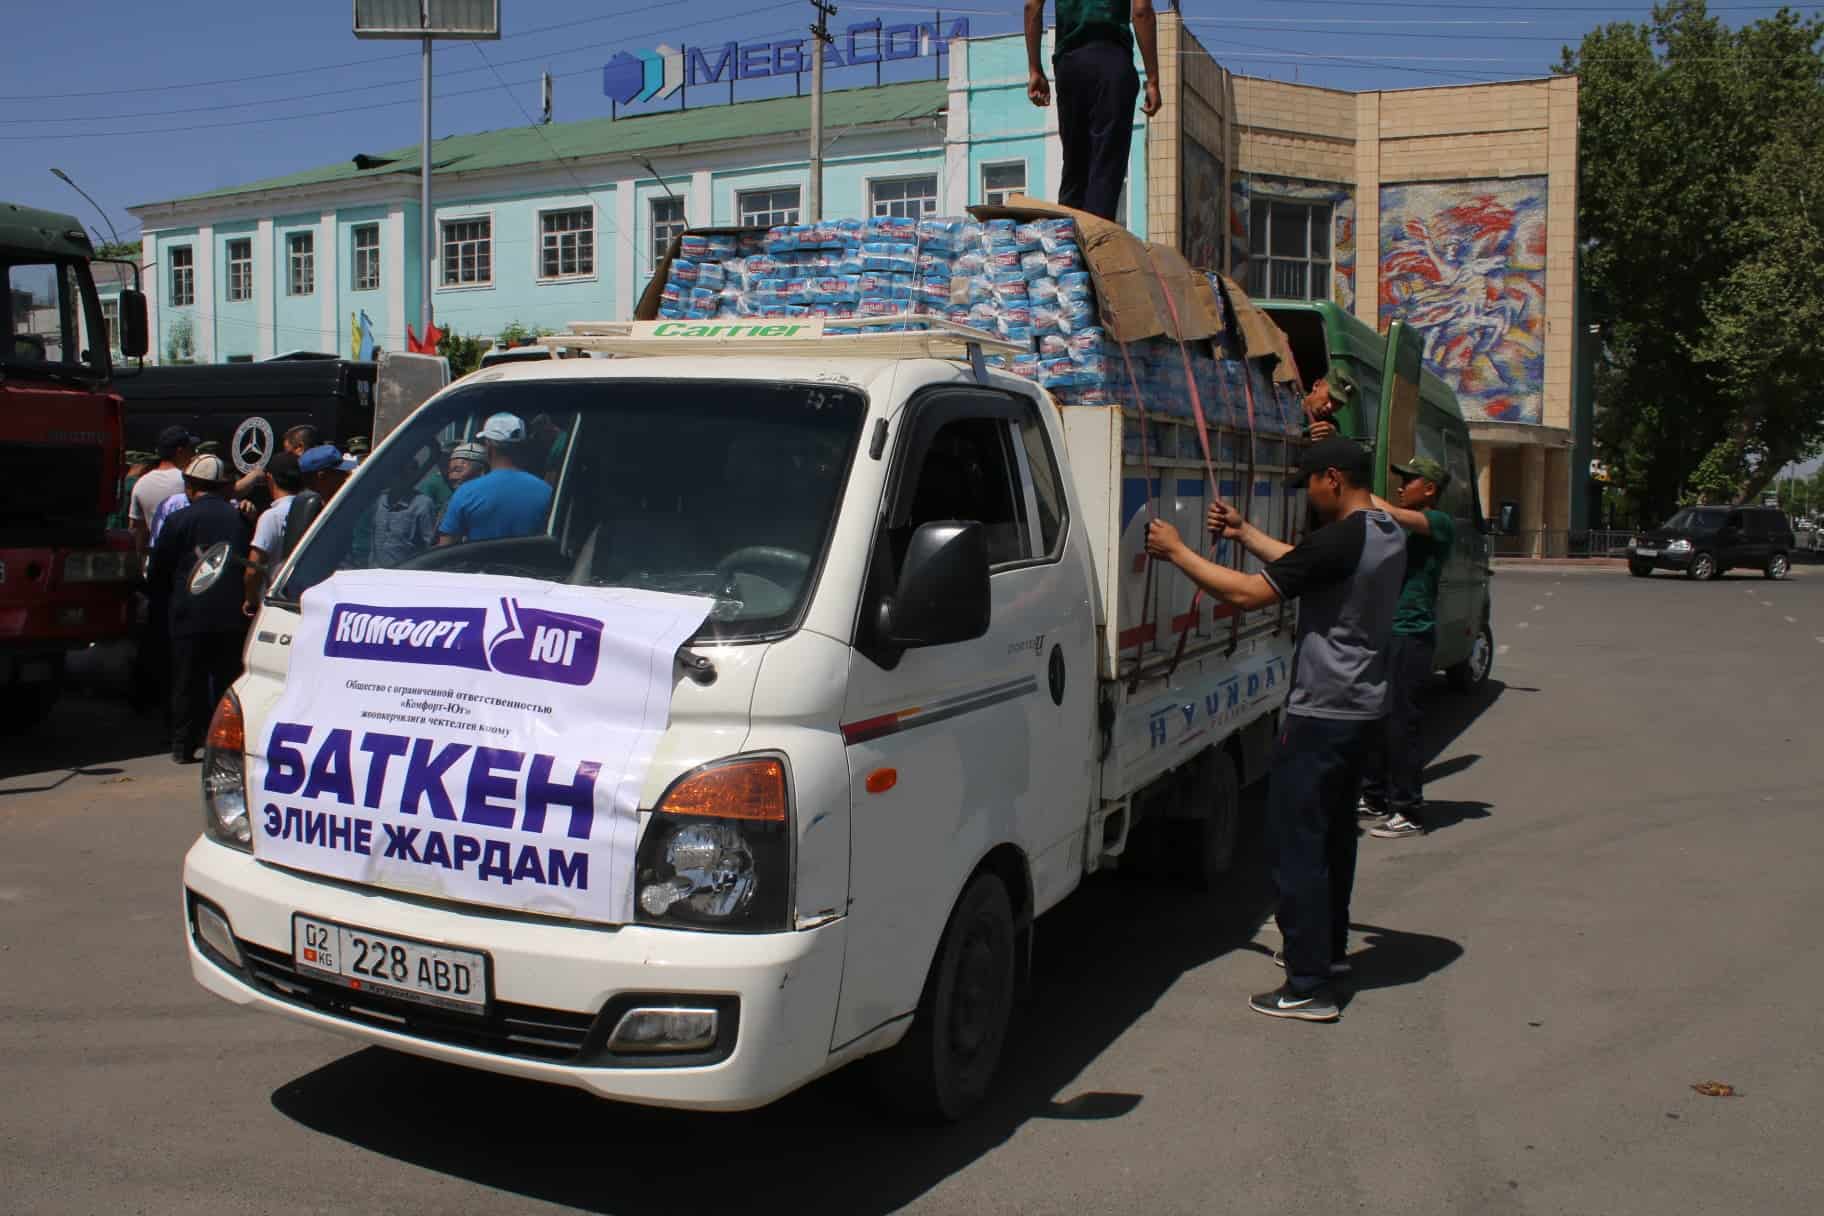 Мэрия Бишкека организовала сбор гумпомощи в поддержку Баткена. АДРЕСА